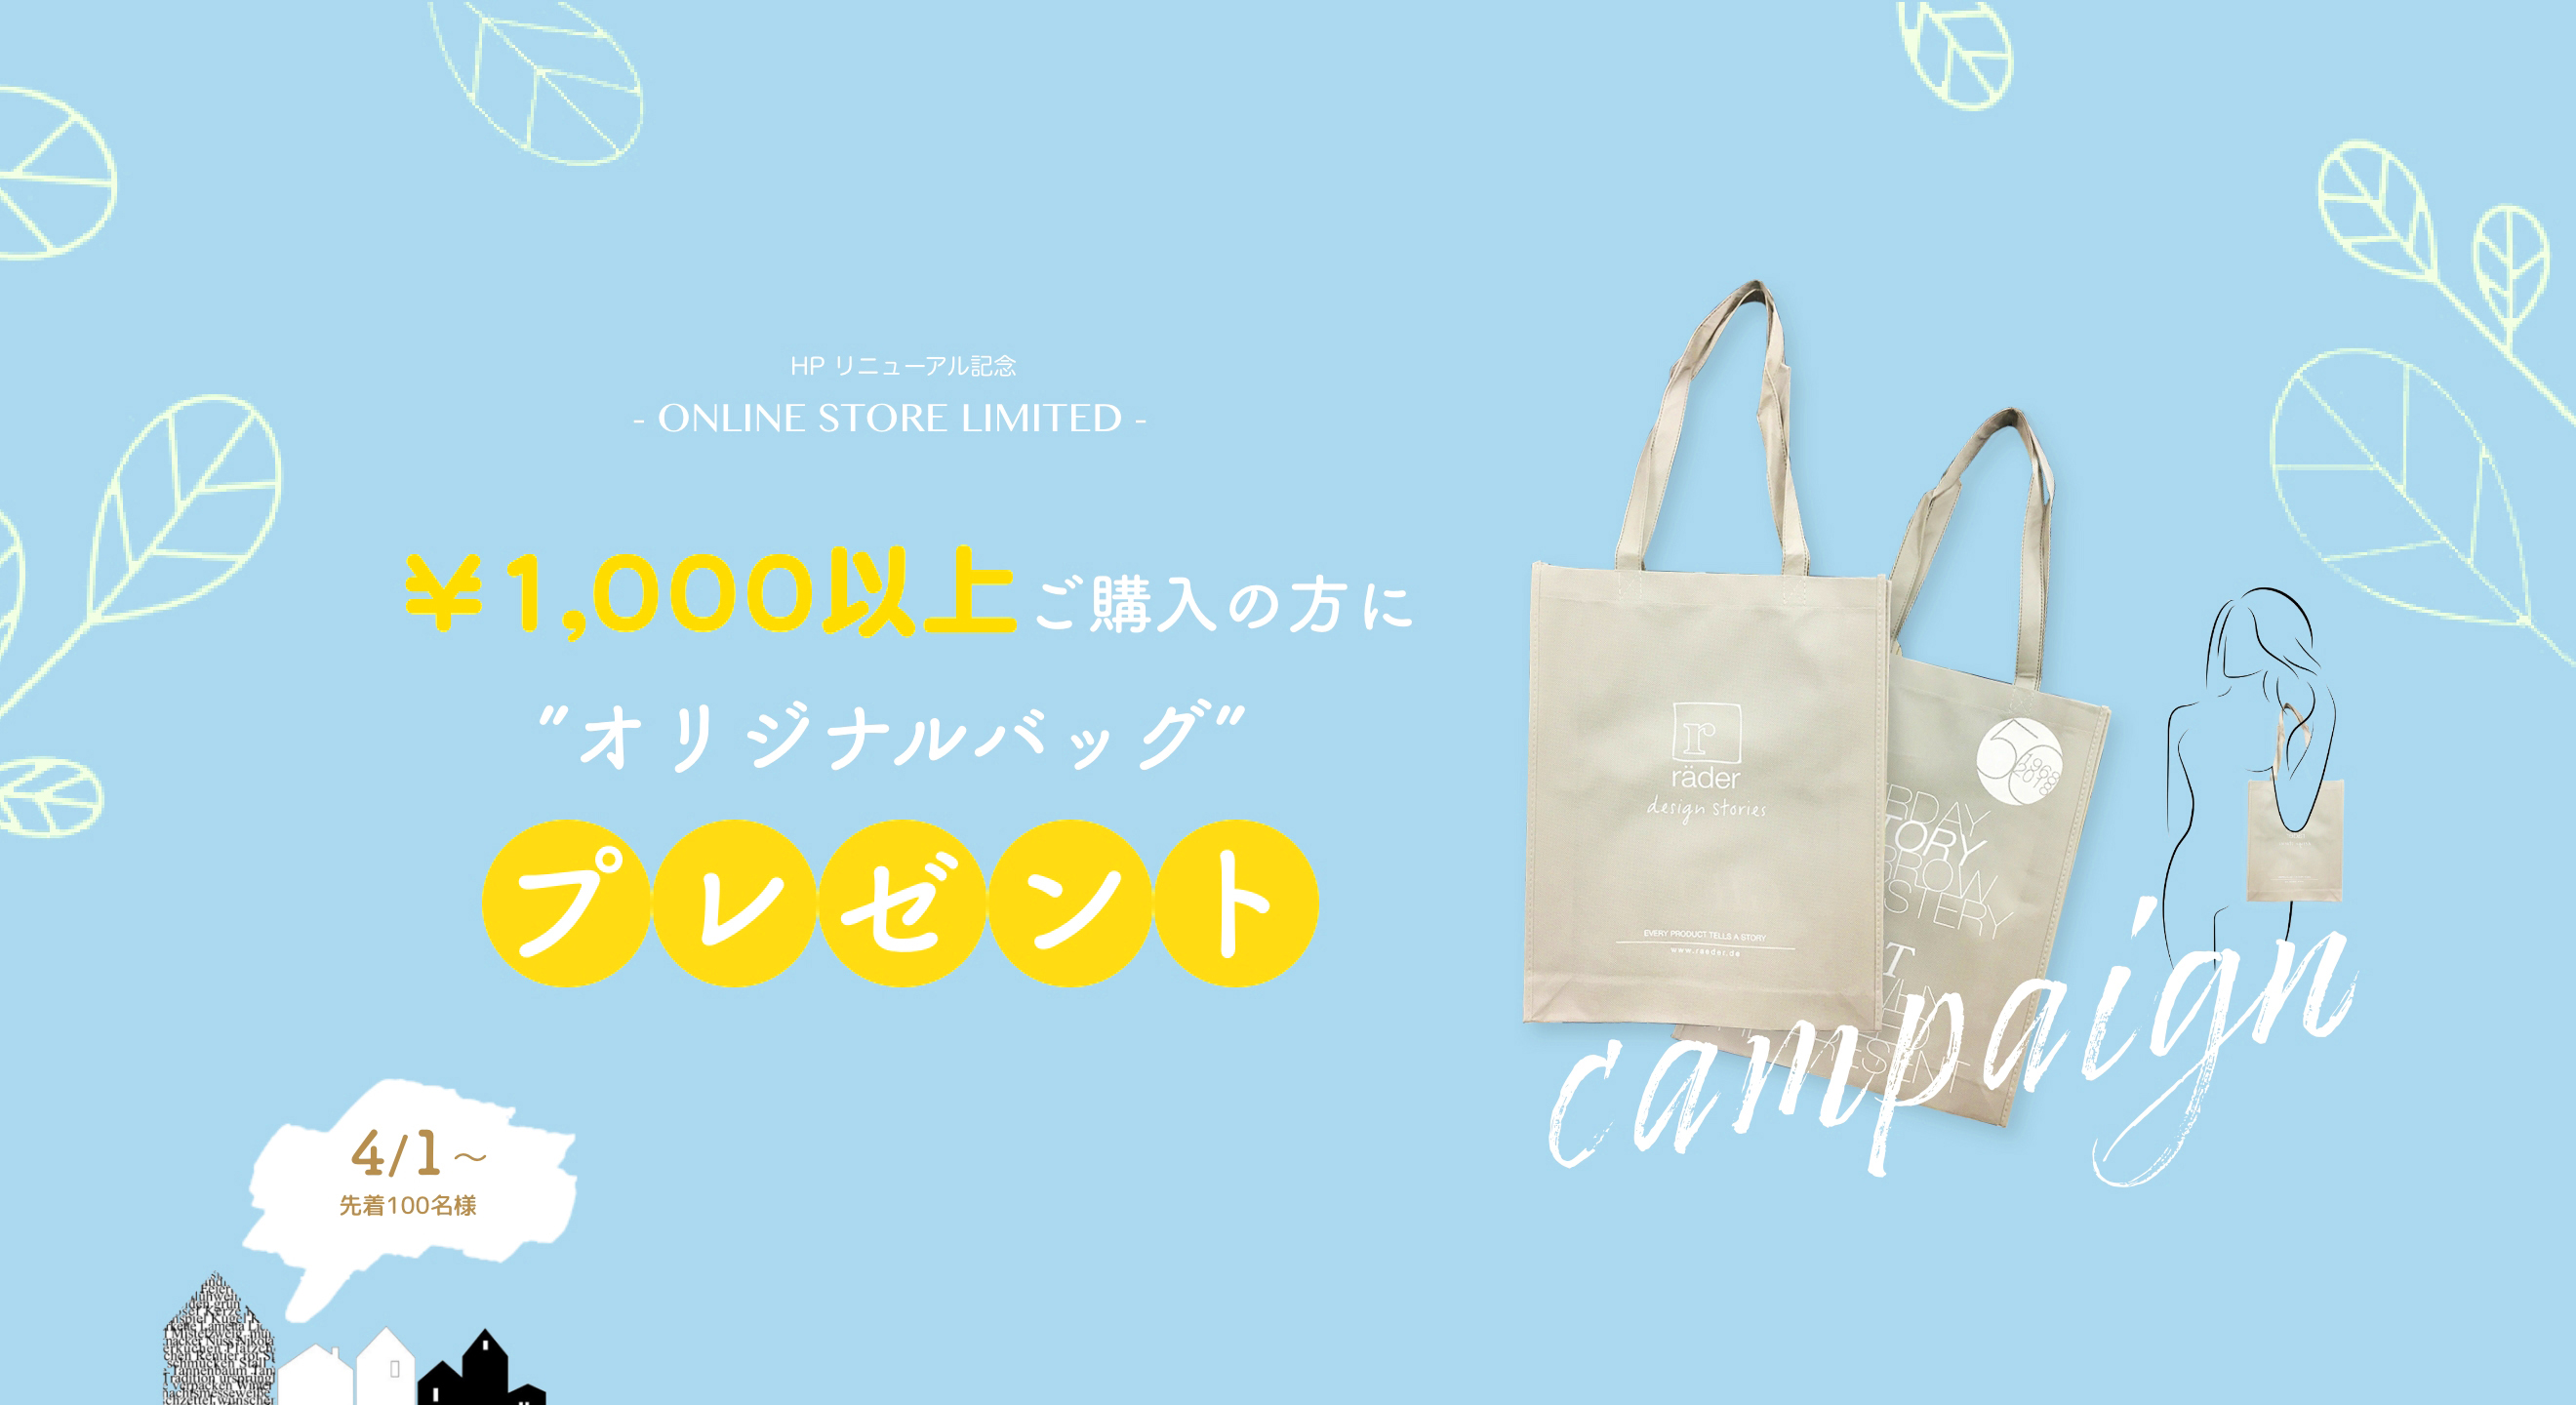 「オリジナルバッグ」プレゼントキャンペーン（4月1日〜6月30日）